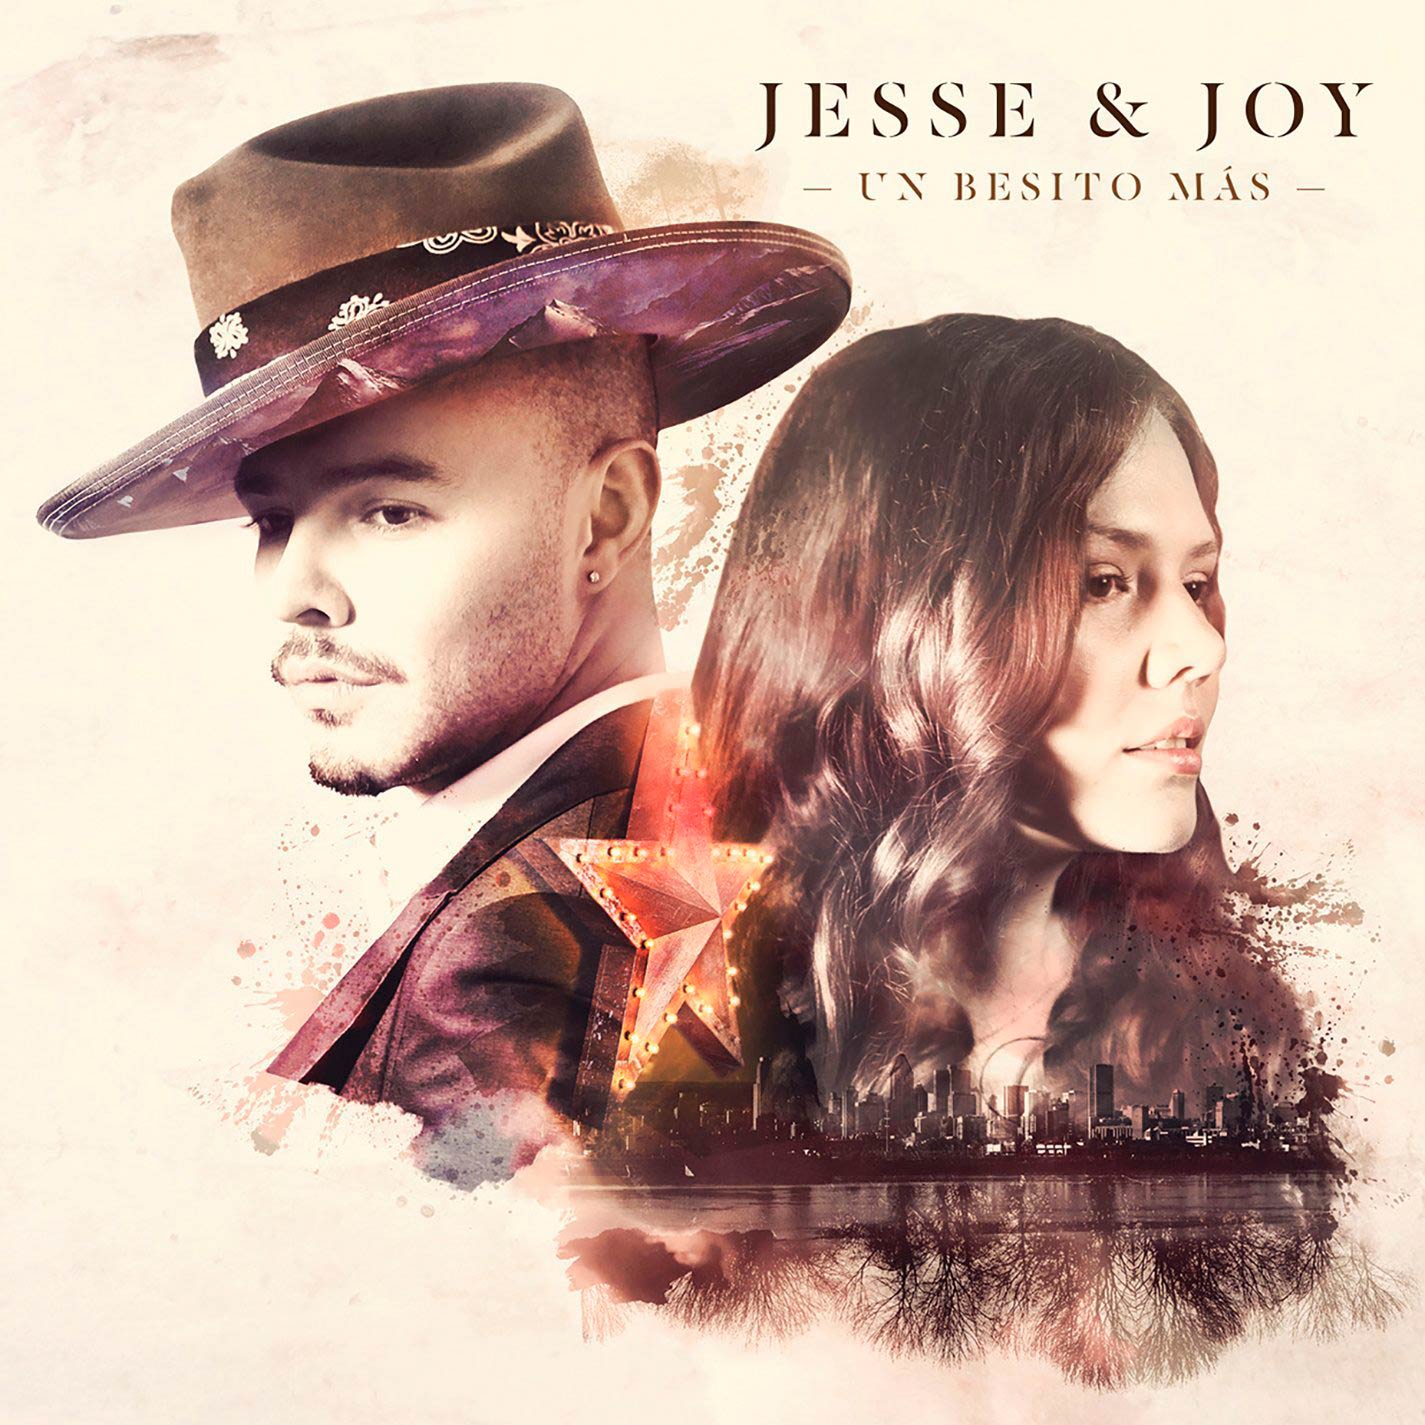 Jesse & Joy: Un besito más, la portada del disco1425 x 1425